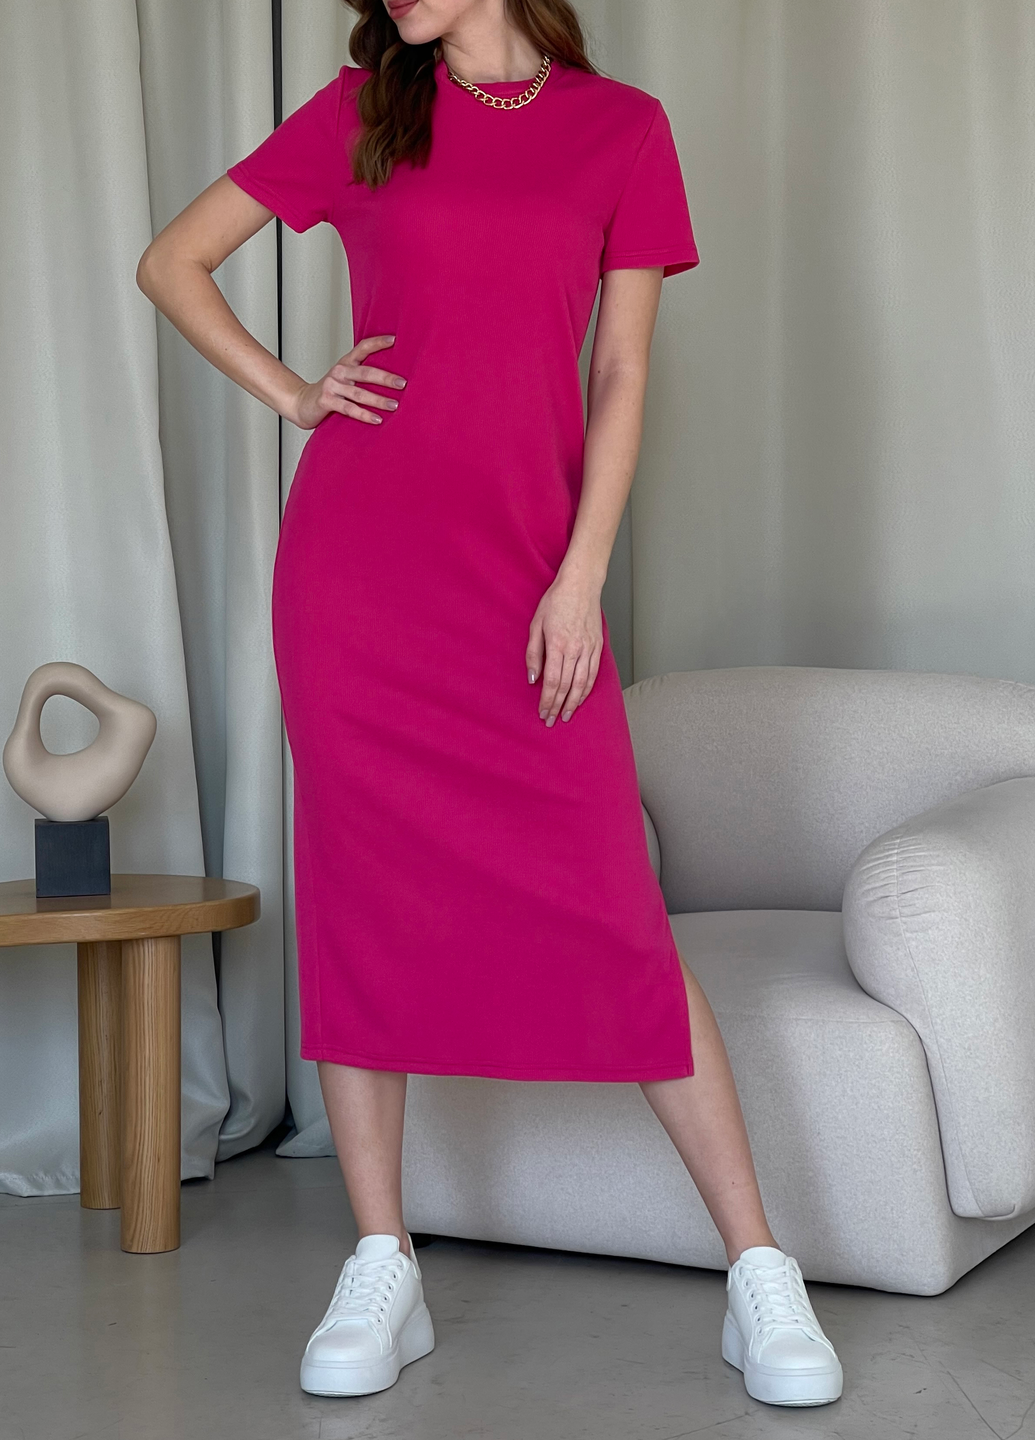 Купить Длинное платье-футболка в рубчик розовое Merlini Кассо 700000128 размер 42-44 (S-M) в интернет-магазине